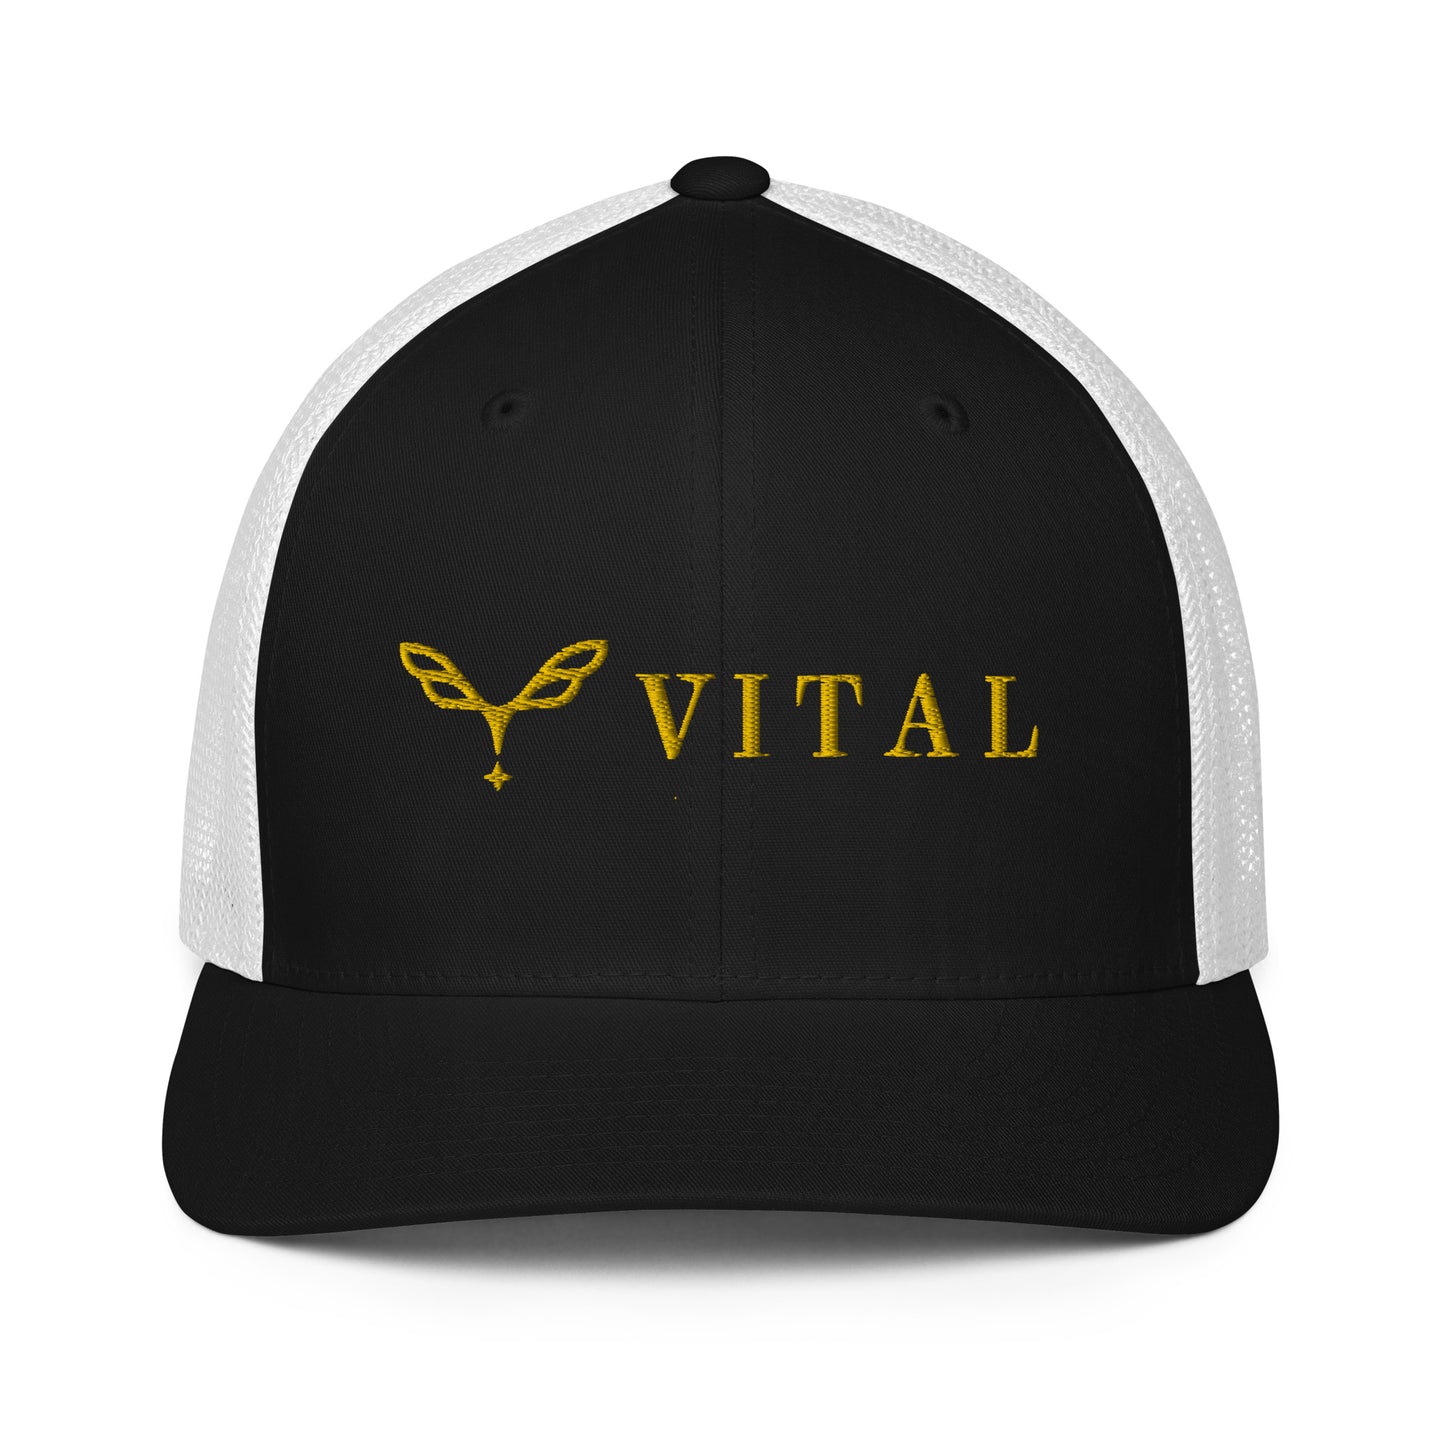 Vital Closed-back trucker cap